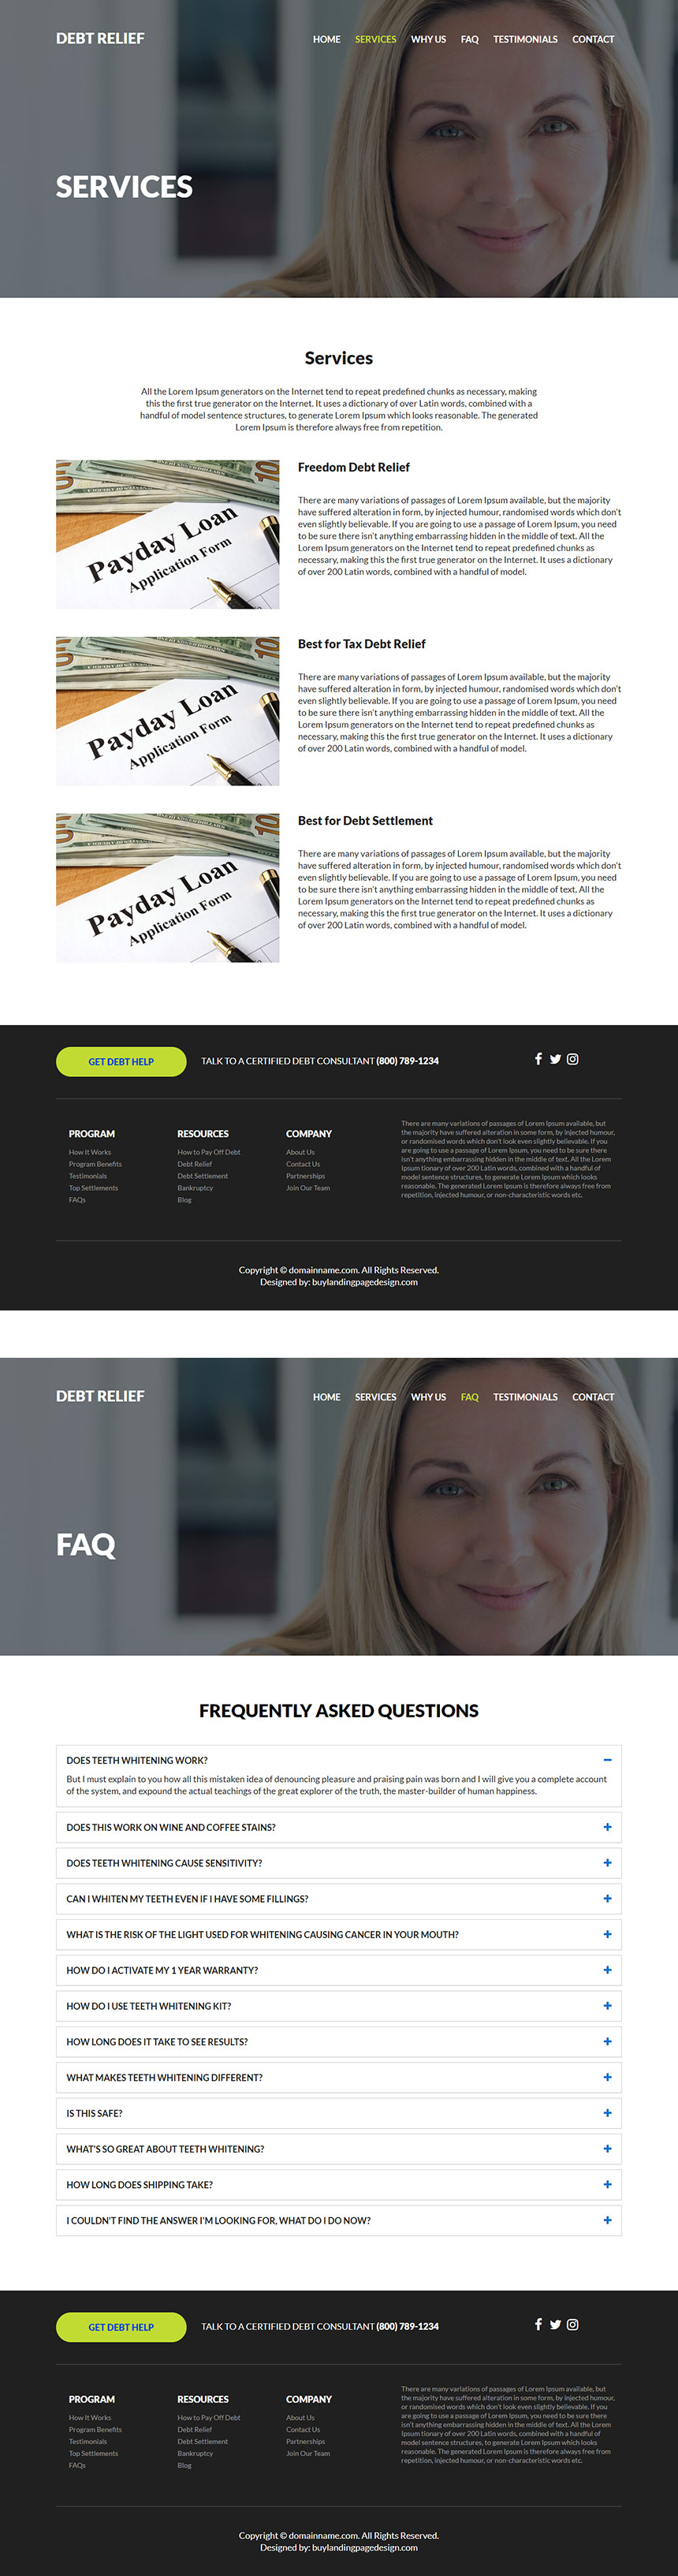 debt relief services responsive website design